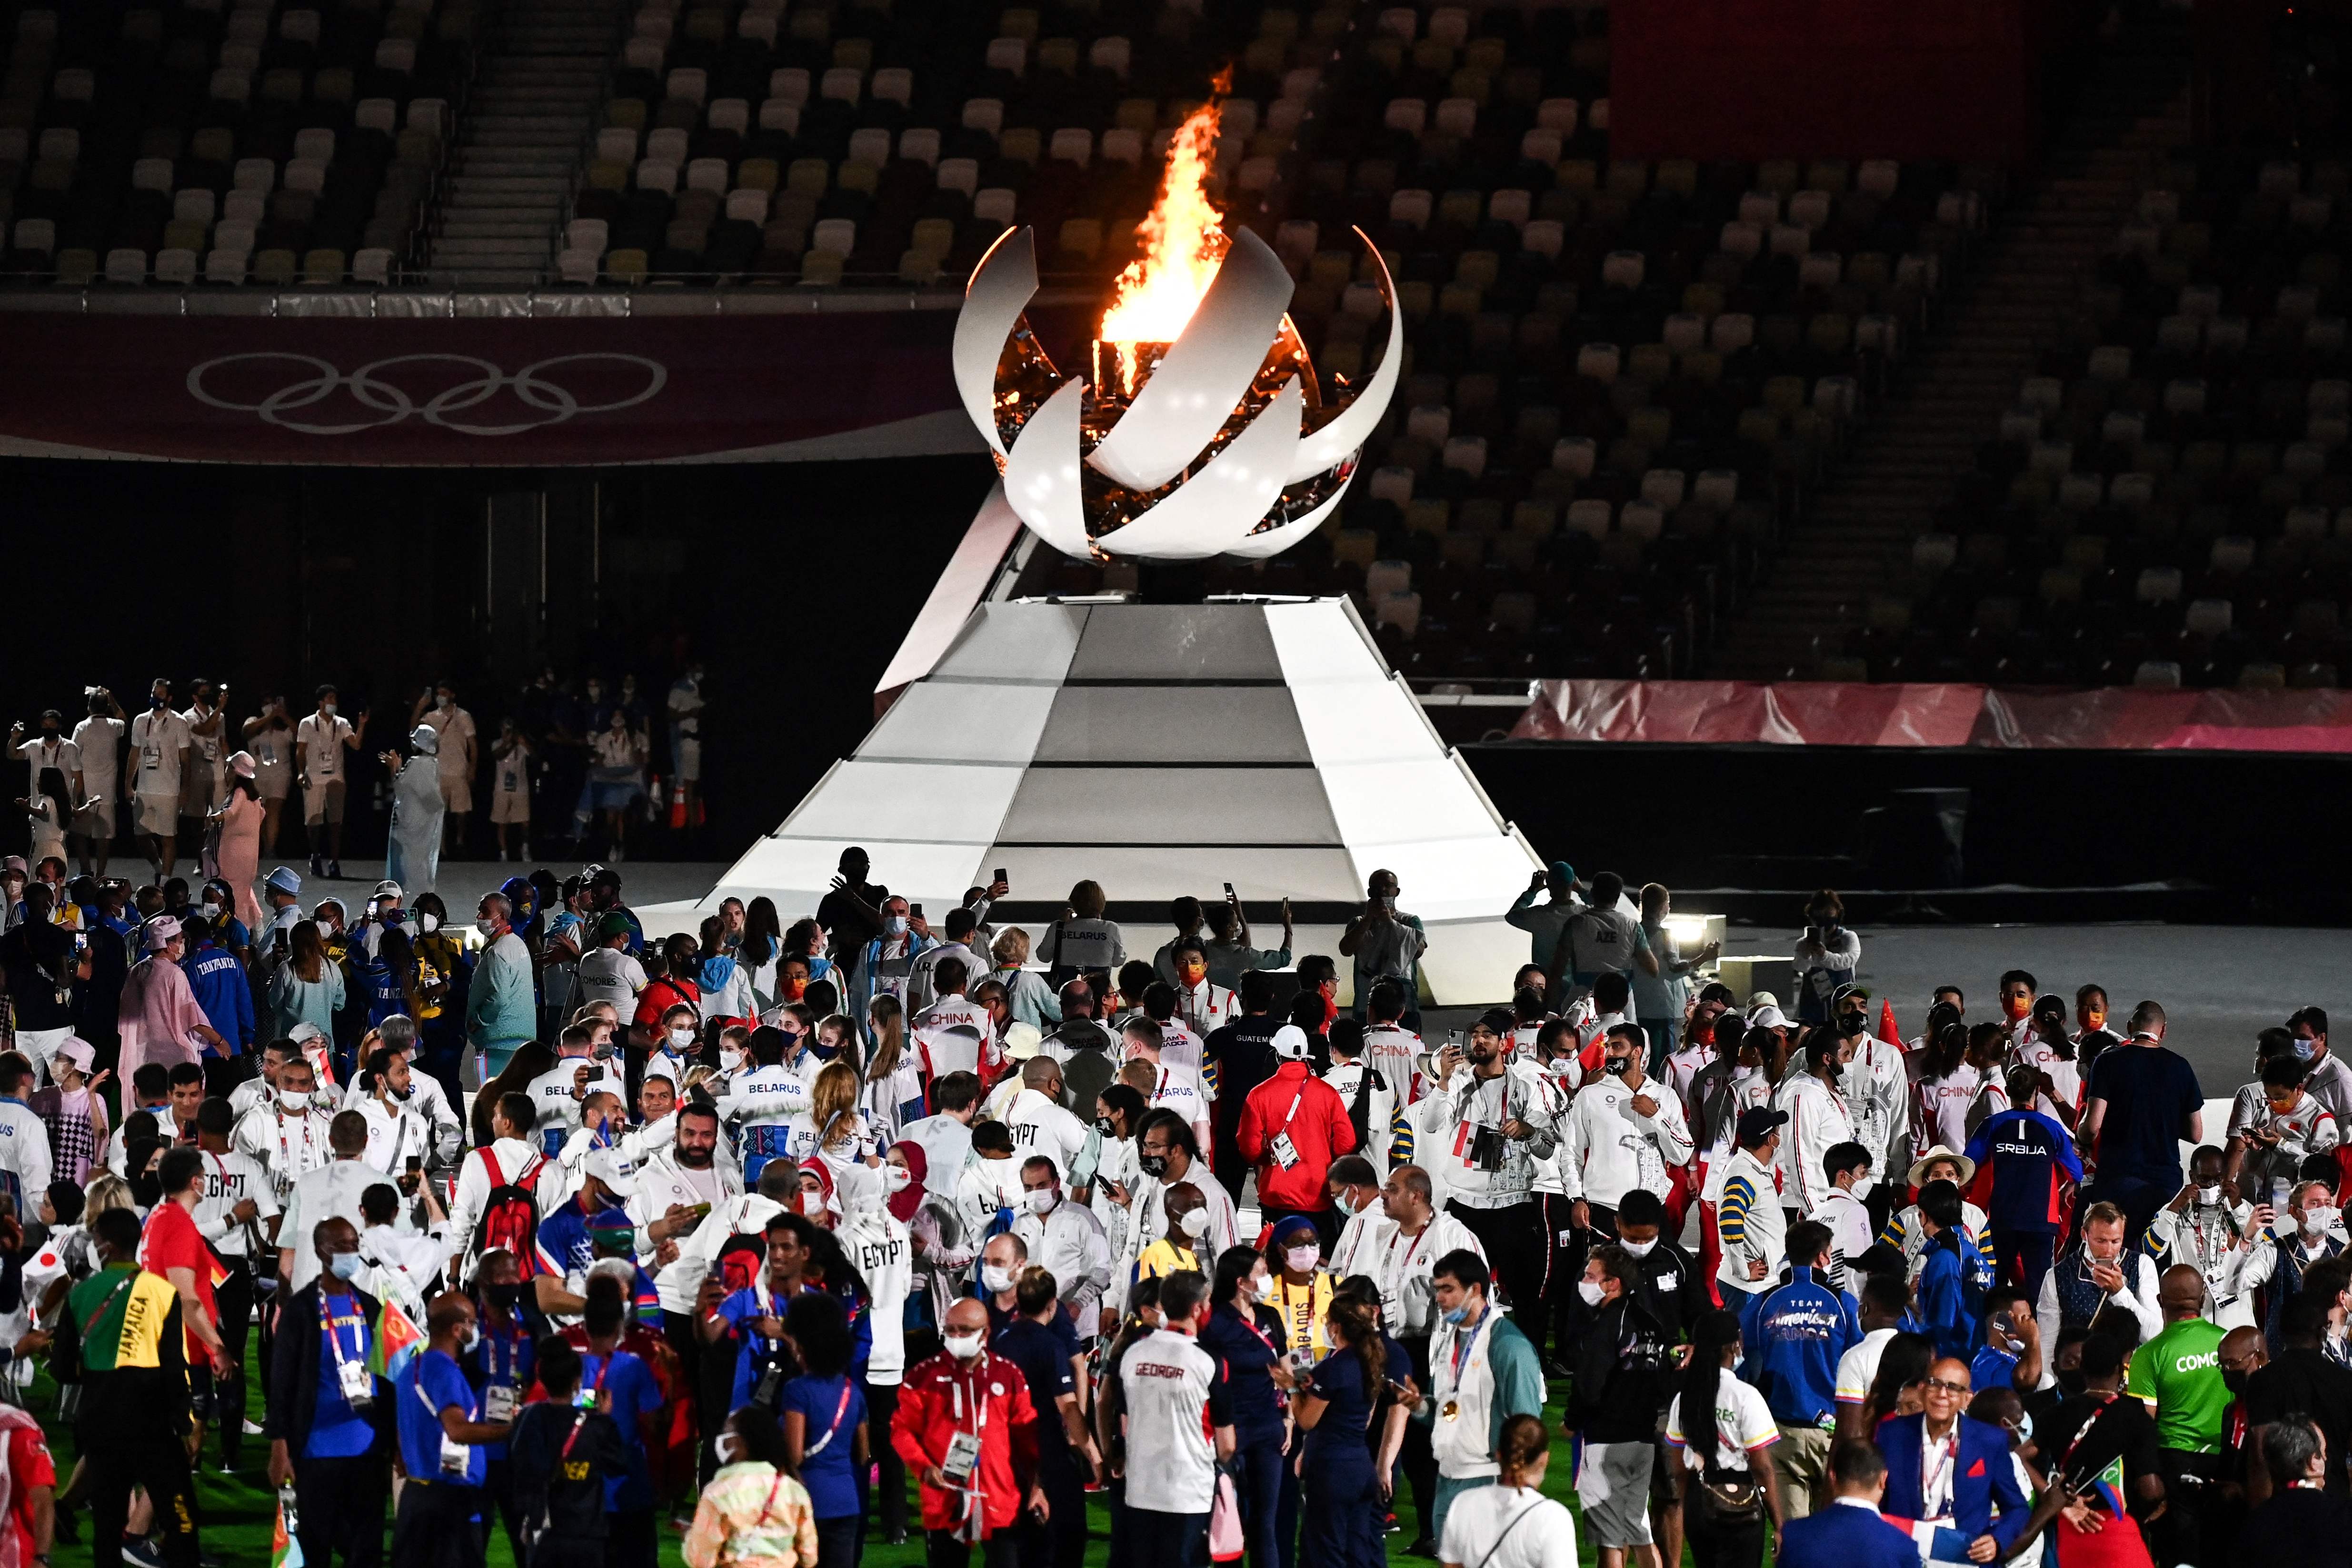 在闭幕式上，各国运动员们聚集在奥运圣火旁，庆祝东京奥运圆满结束。（法新社照片）

